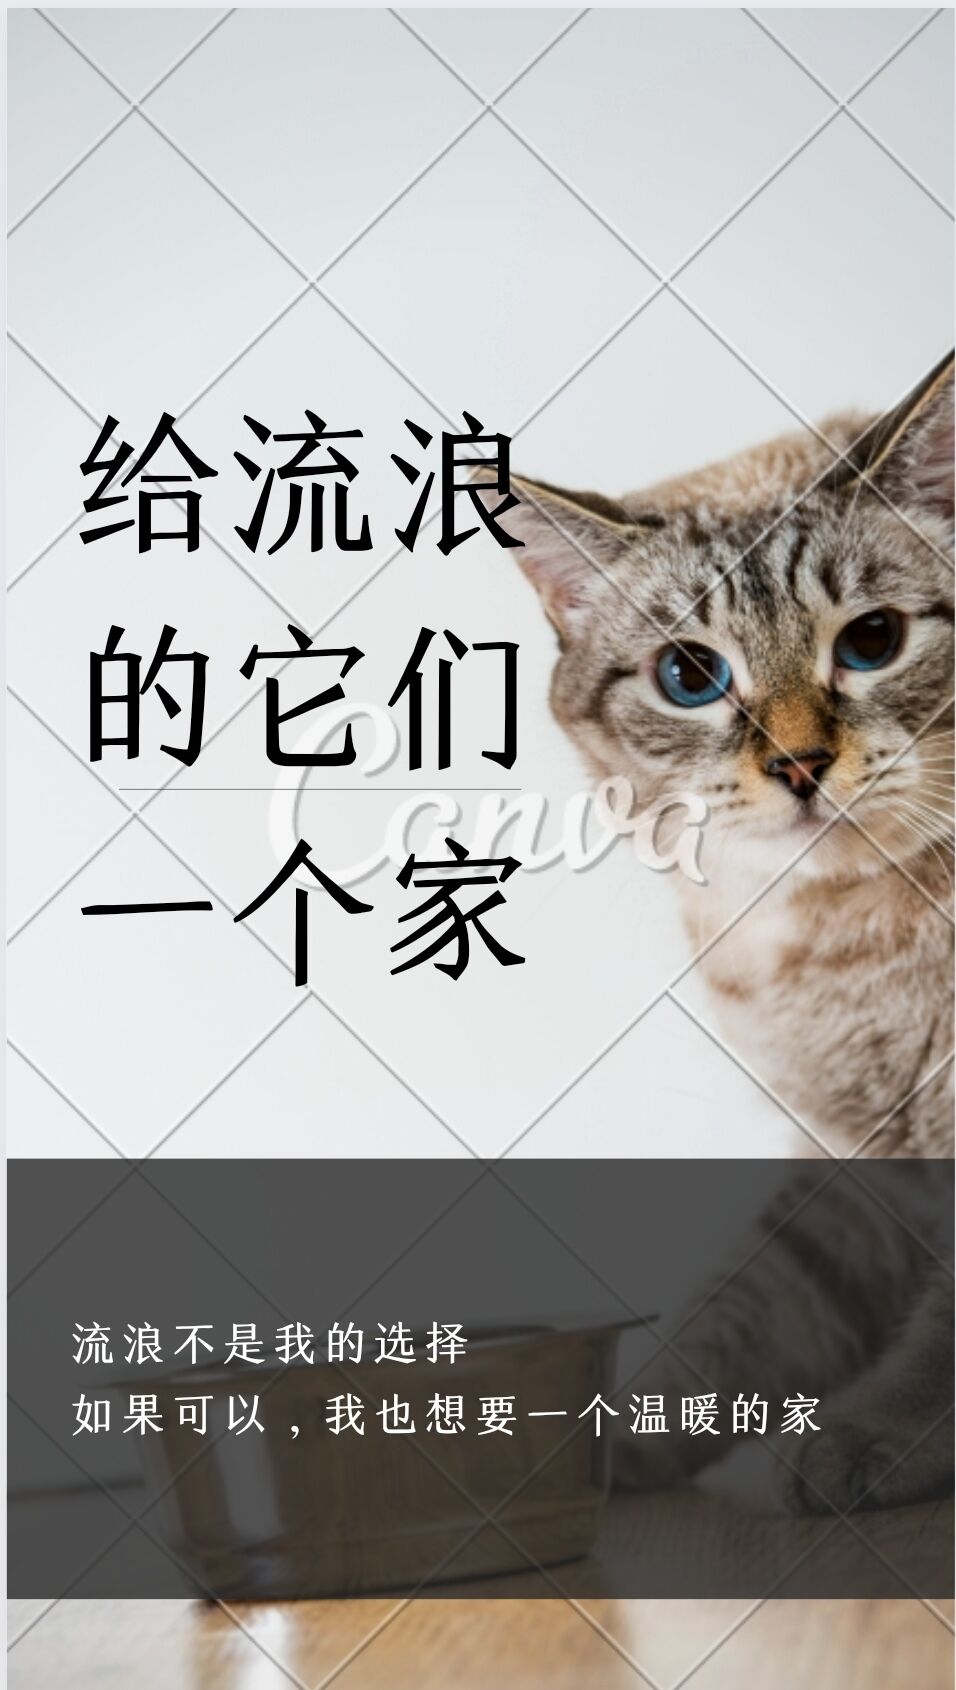 02图为团队成员制作的宣传海报 团队成员 赵鹏宇供图.jpg